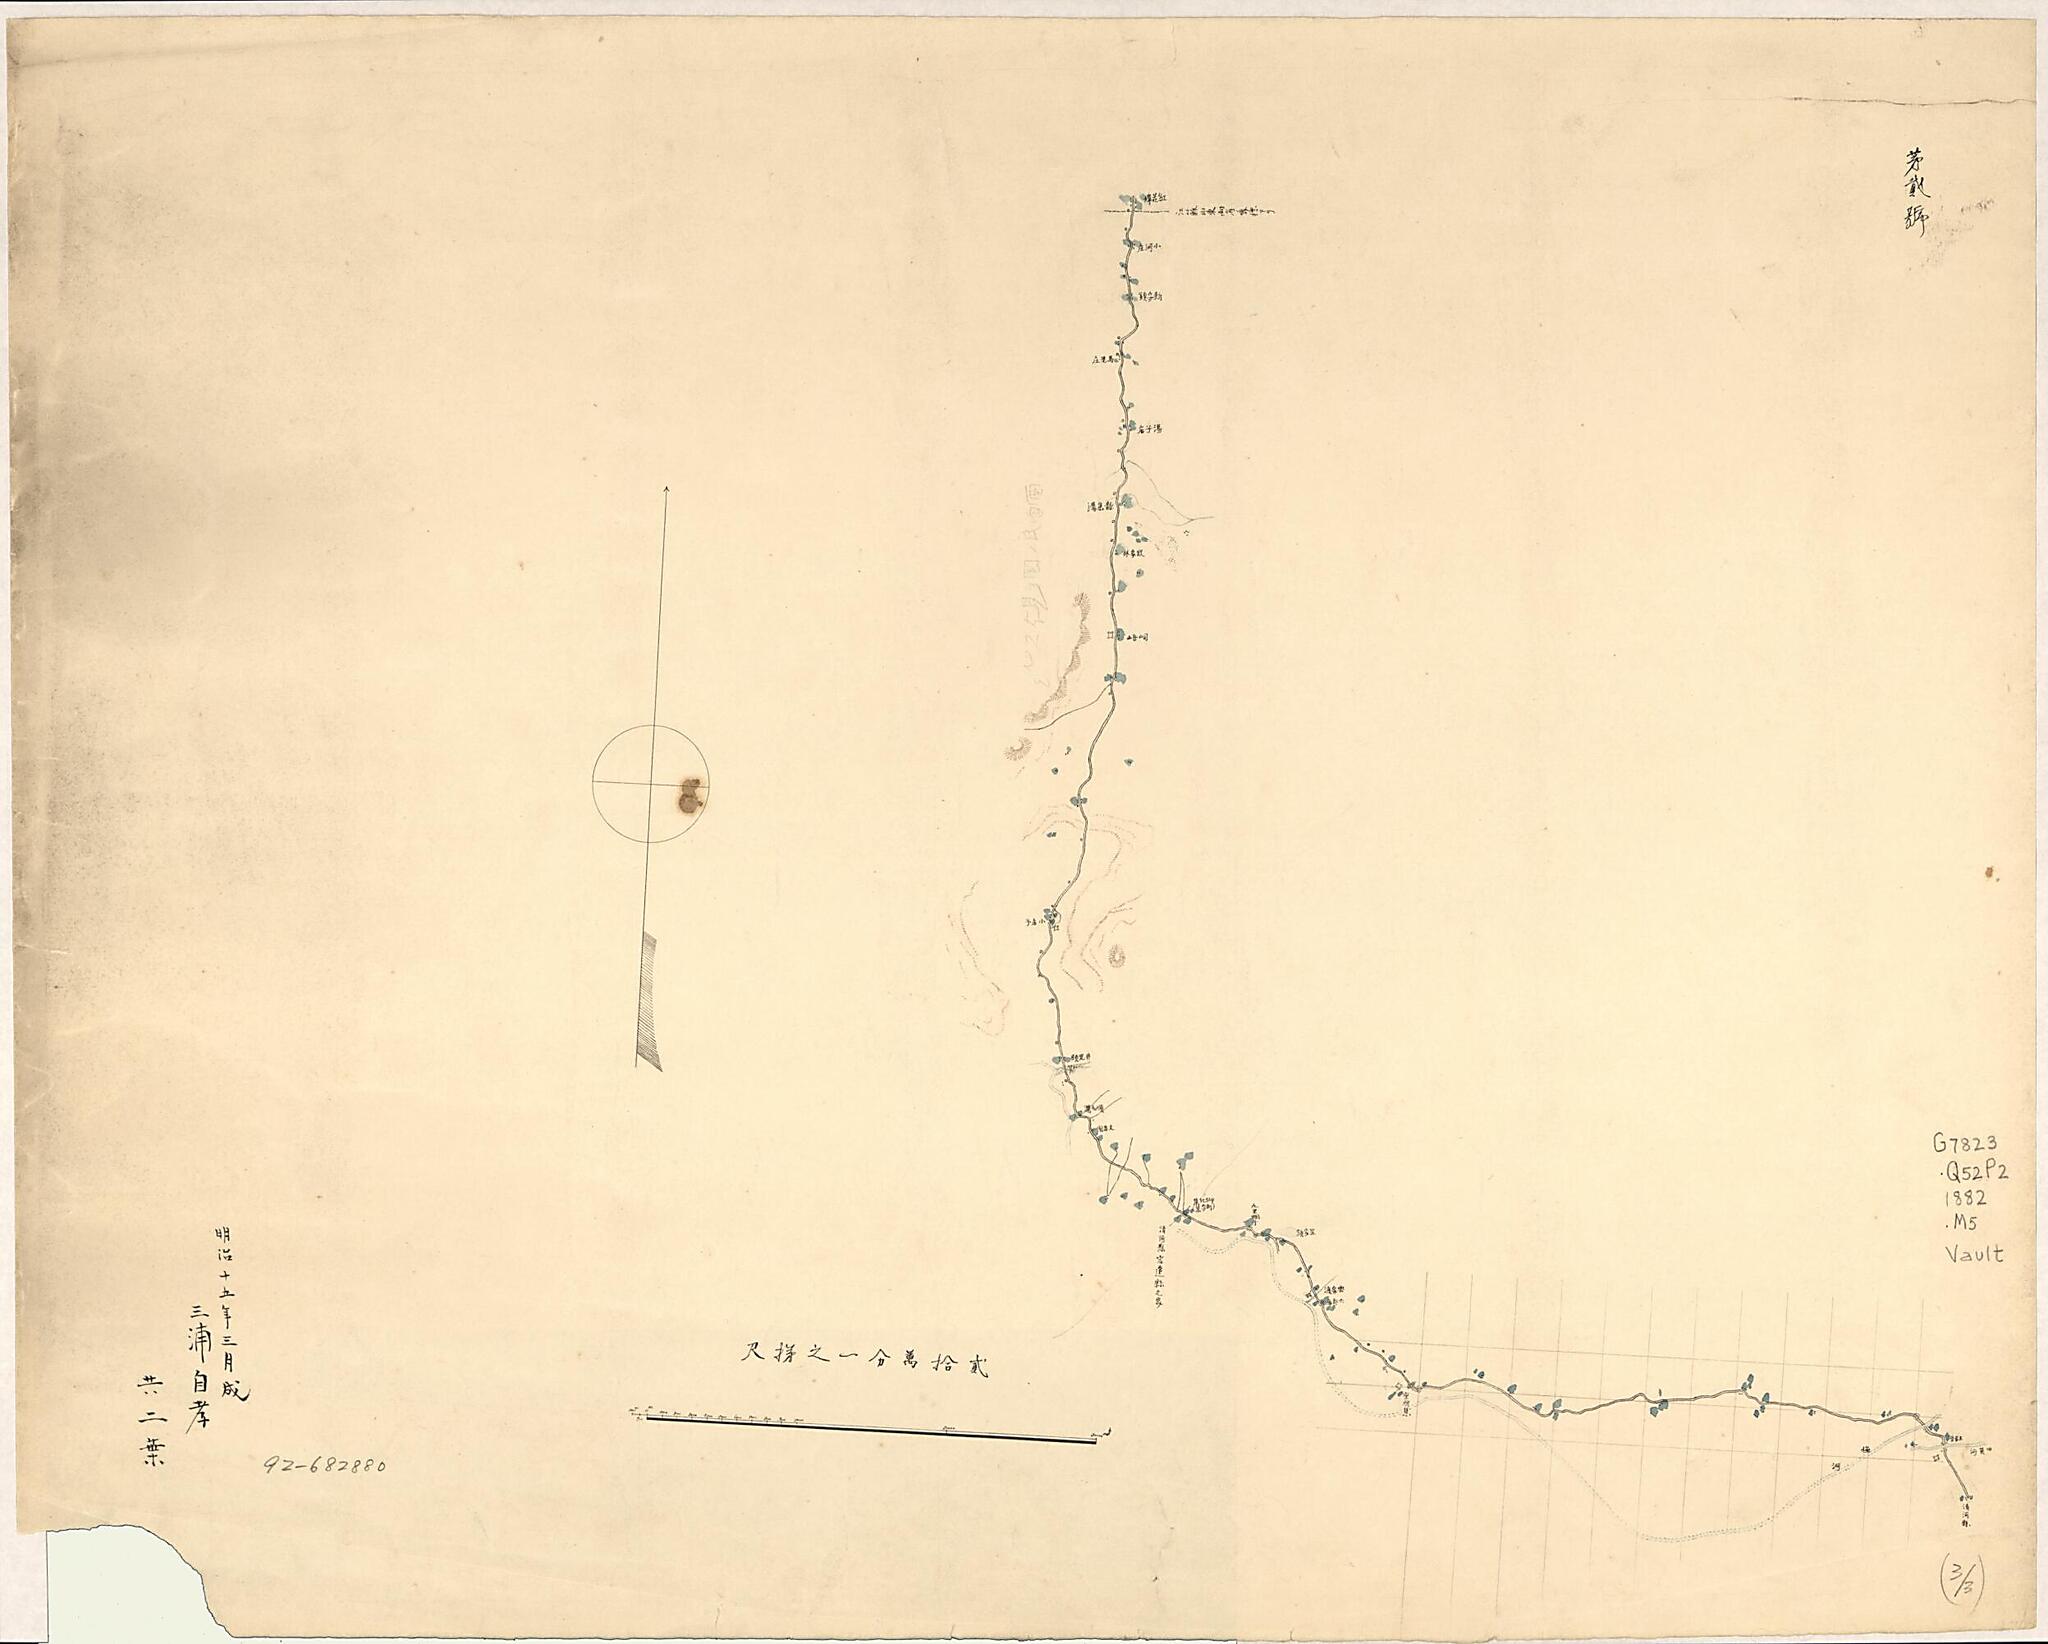 This old map of Shō Seika-ken Yori Santō-shō Taian-fu Ni Itaru Rojōzu (Cong Jiangsu Sheng Qinghe Xian Zhi Shandong Sheng Taian Fu Lu Shang Tu) from 1882 was created by Yoritaka Miura in 1882